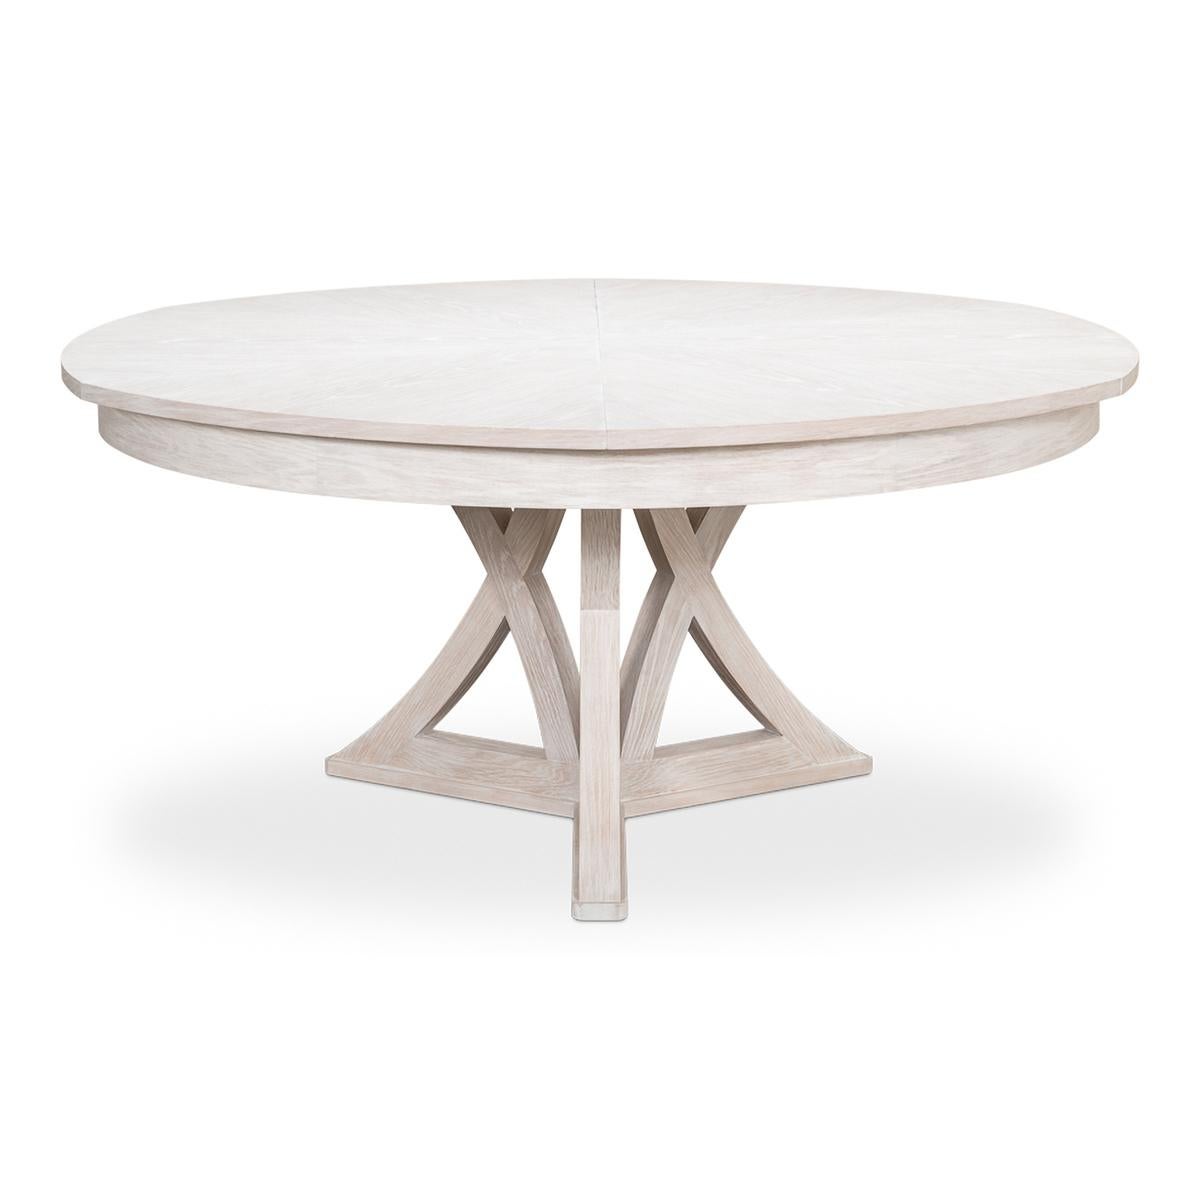 Table à manger ronde à rallonge en chêne rustique de style transitionnel. La table en chêne dans notre finition blanchie à la chaux est une excellente combinaison de style classique et de commodités modernes. Fermée, elle mesure 64